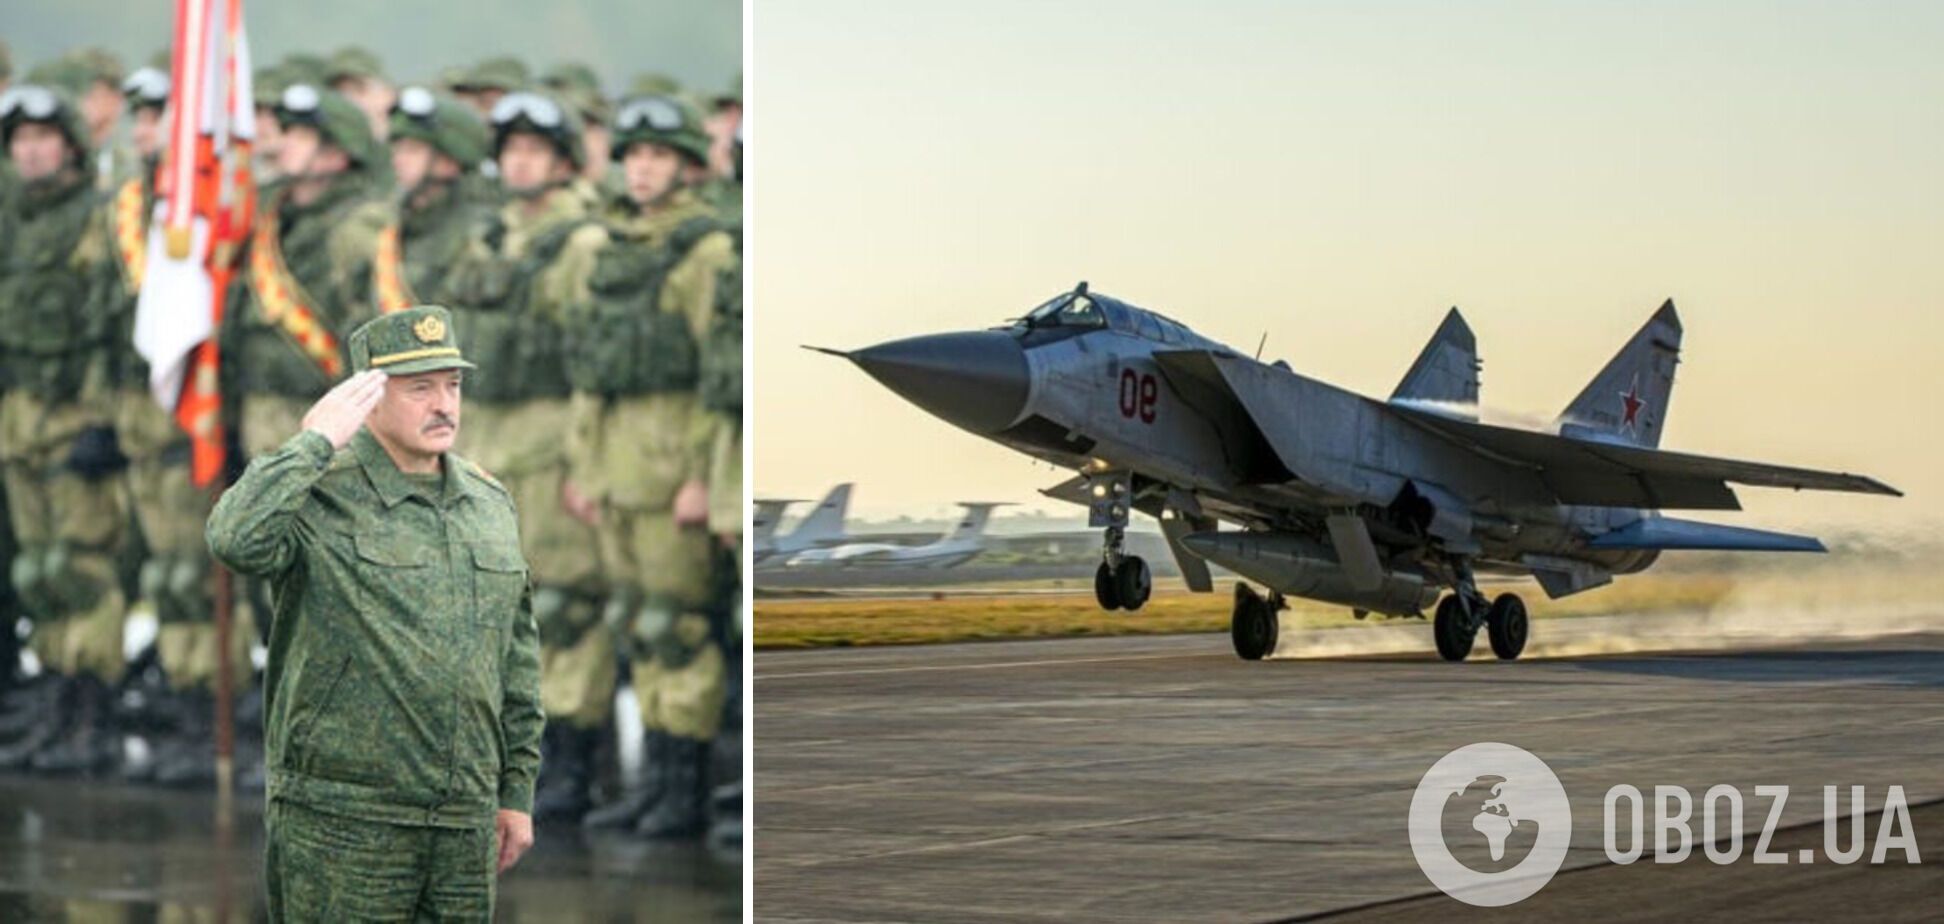 Авиационная составляющая группировки войск РФ прибыла в Беларусь